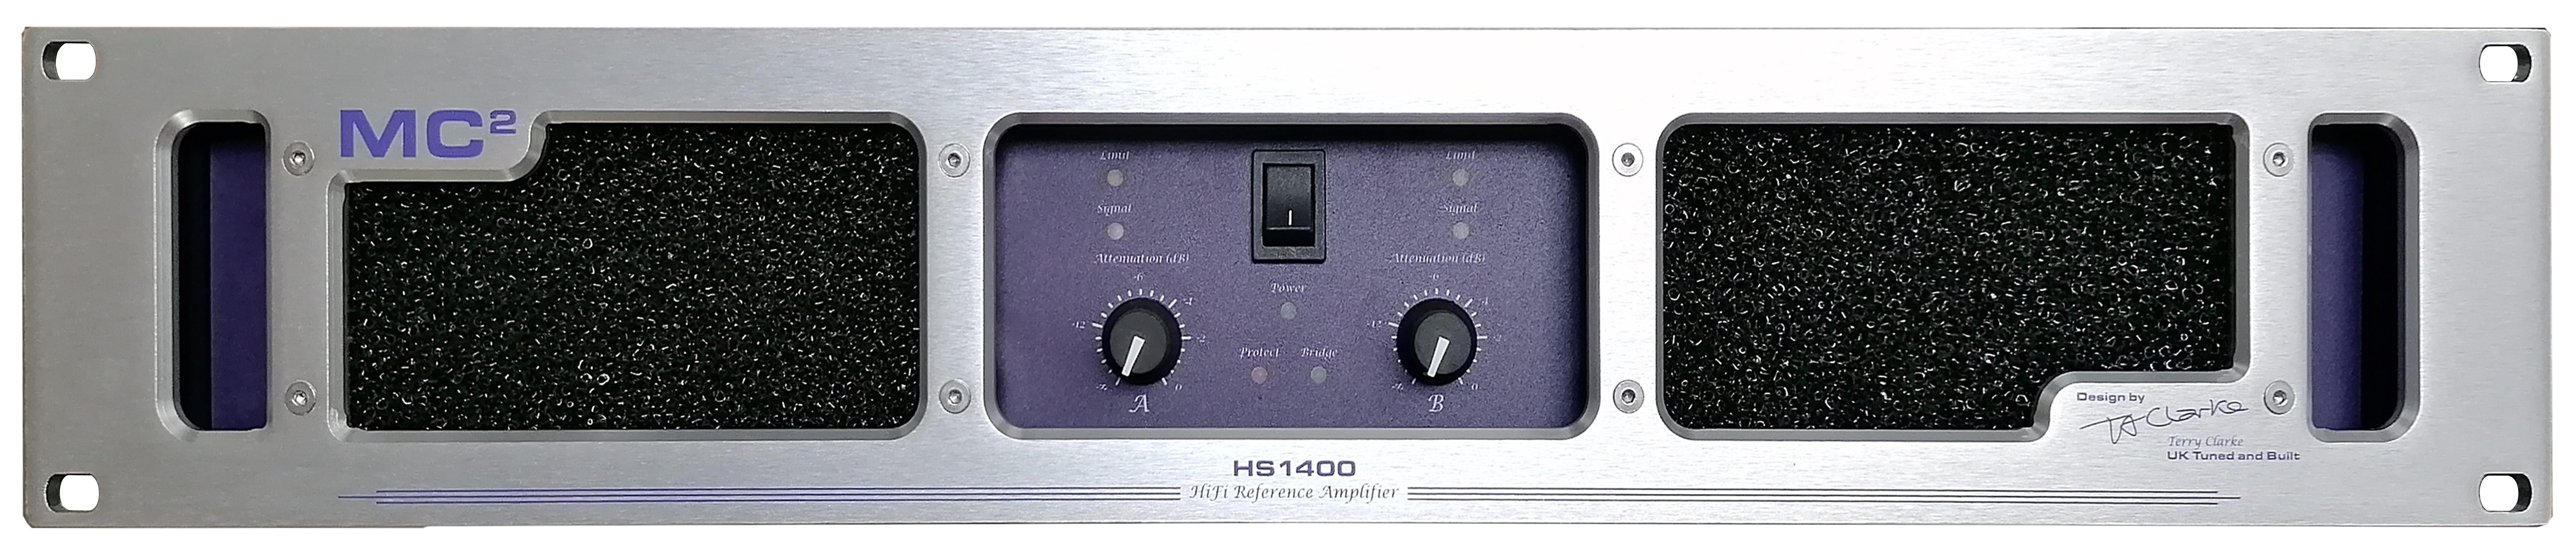 HS1400-E